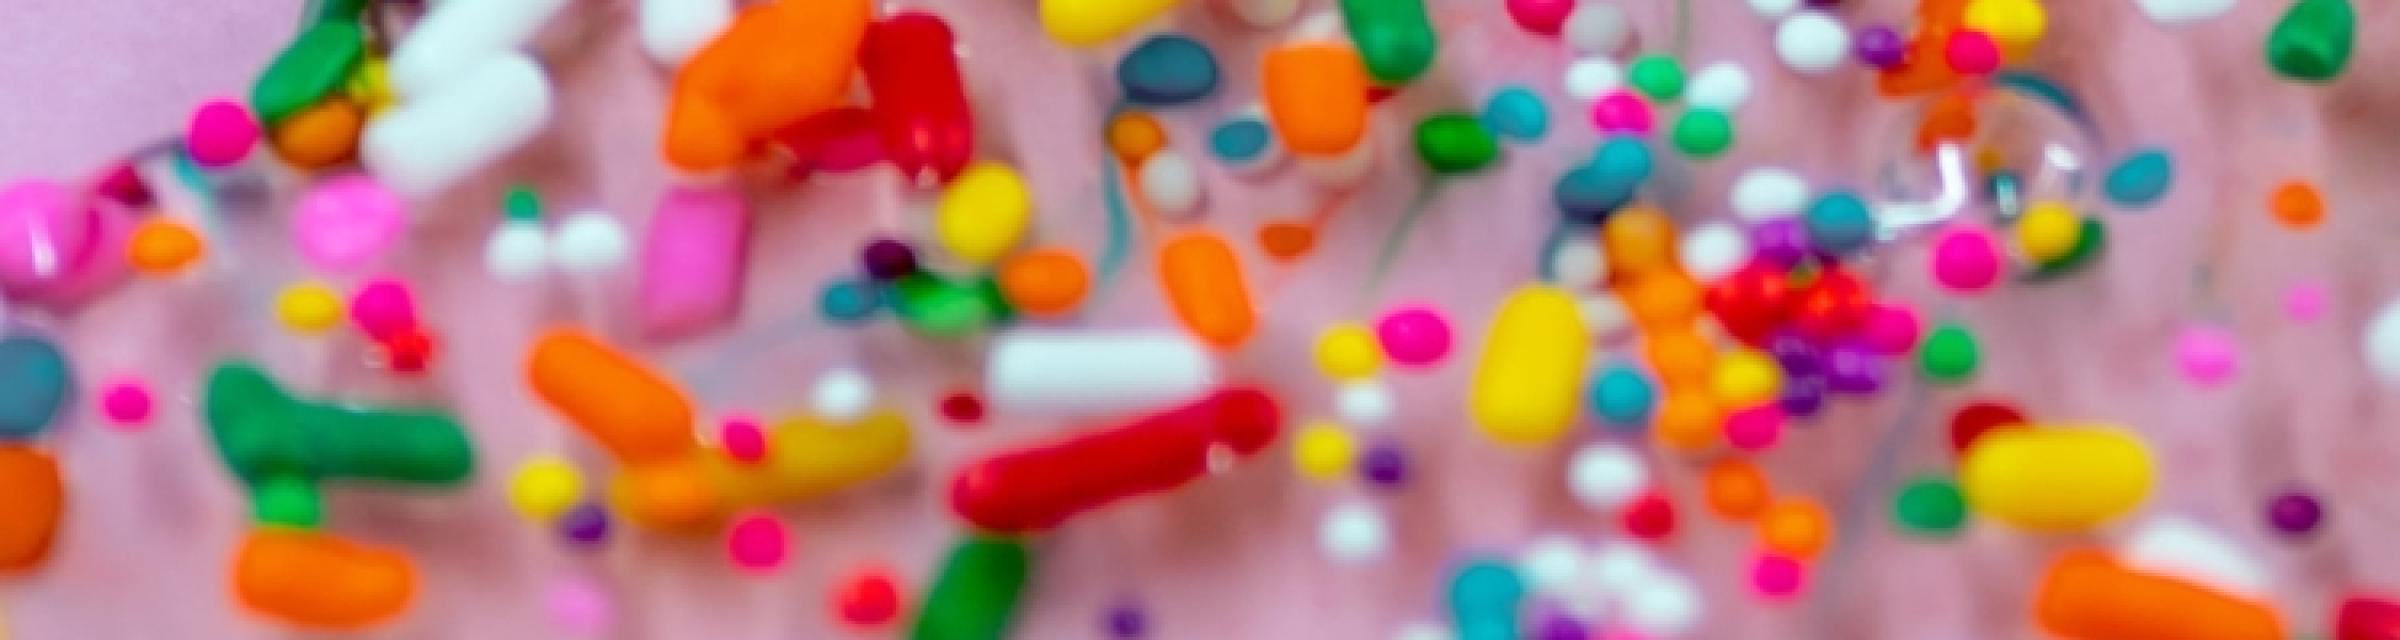 Bunte Bonbons und andere Teilchen auf rosa Hintergrund